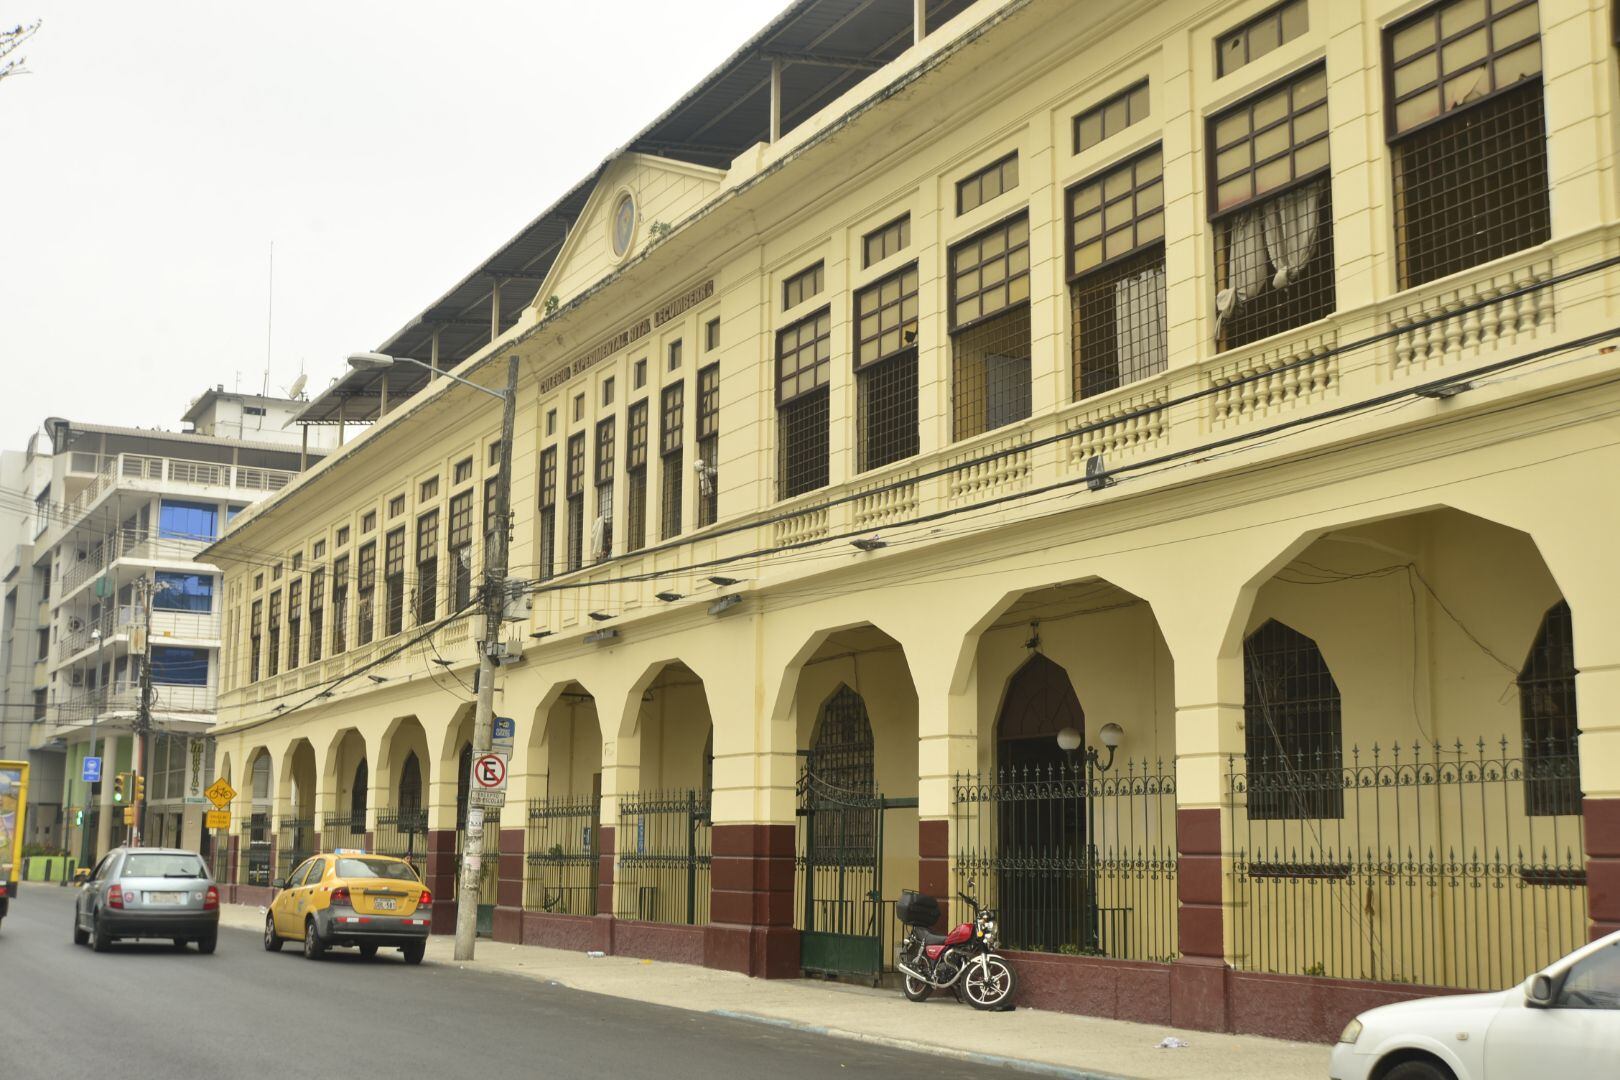 El colegio Rita Lecumberro (García Moreno entre Hurtado y Vélez), el primer colegio fiscal femenino que tuvo Guayaquil, es una de las dos instituciones educativas centenarias en el barrio del Salado.